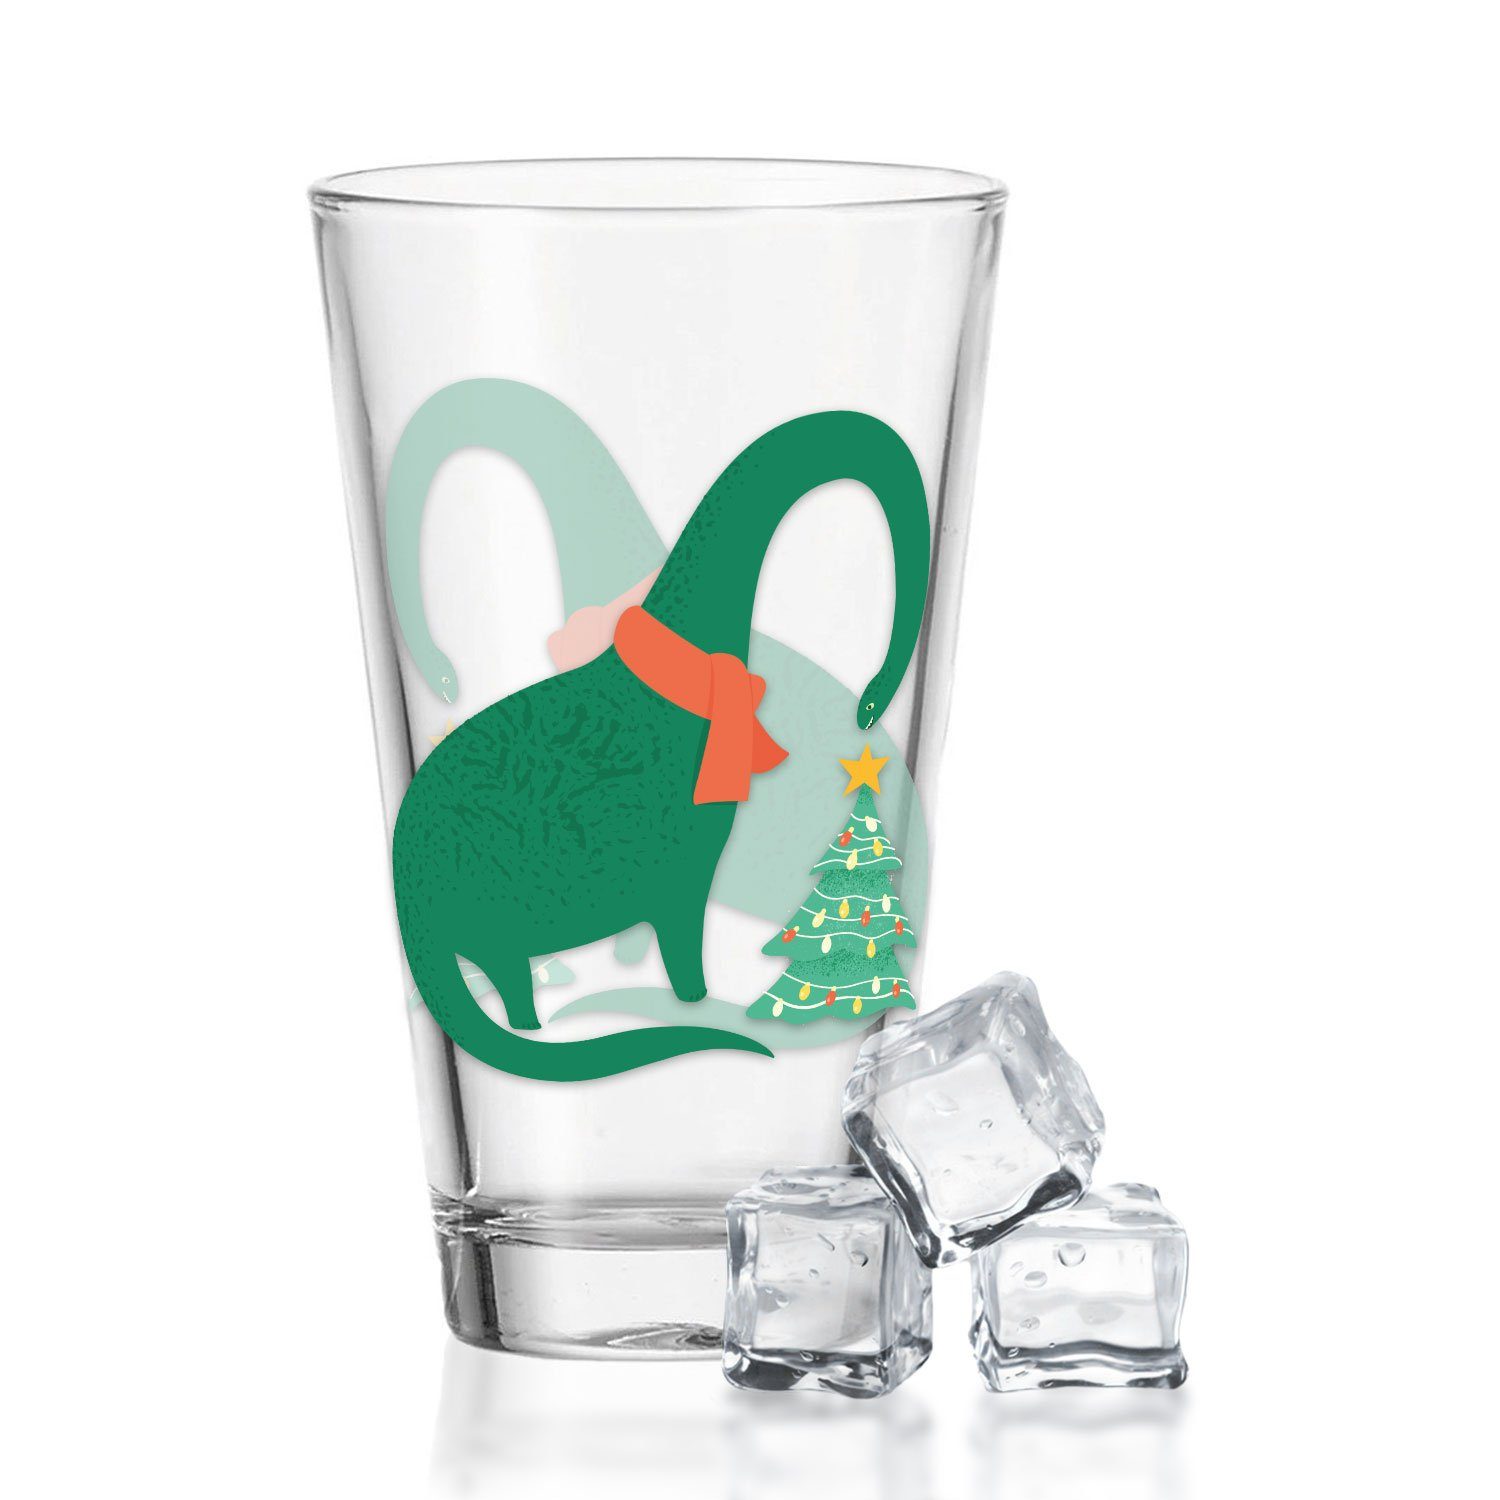 GRAVURZEILE Glas mit UV Druck Weihnachtsmotiv - Santalanghals, Weihnachtsdeko - Geschenke für Jungen und Mädchen, Zur Weihnachtszeit zum Wichteln und als Geschenk für Kinder